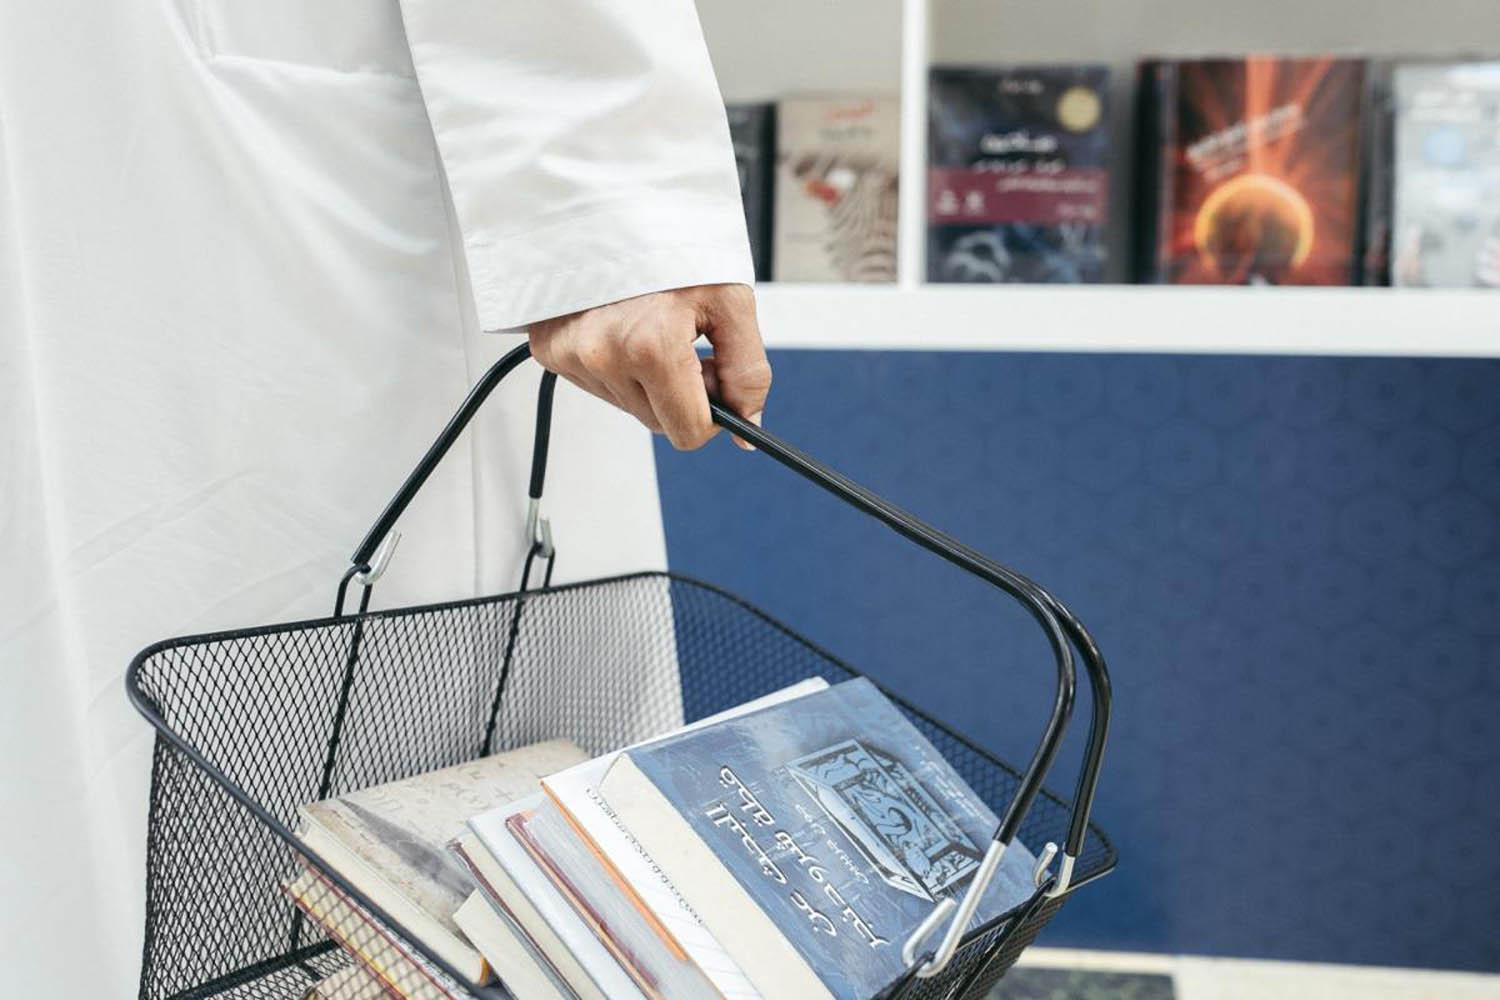 اماراتي يشتري كتبا من معرض لمشروع كلمة في أبوظبي